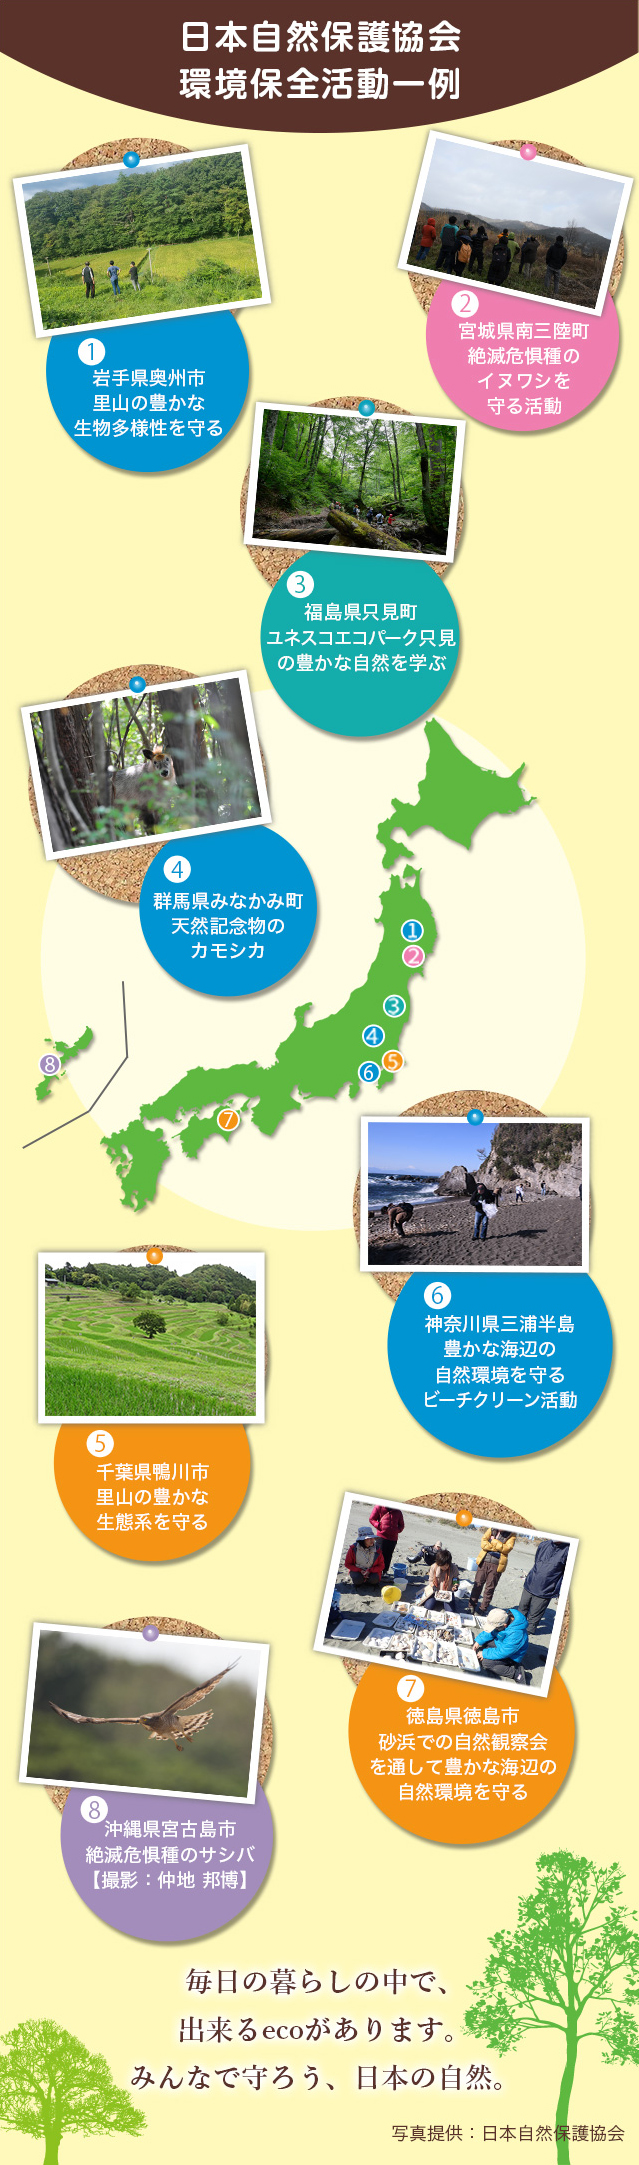 日本自然保護協会環境保全活動一例 毎日の暮らしの中で、できるecoがあります。みんなで守ろう、日本の自然。